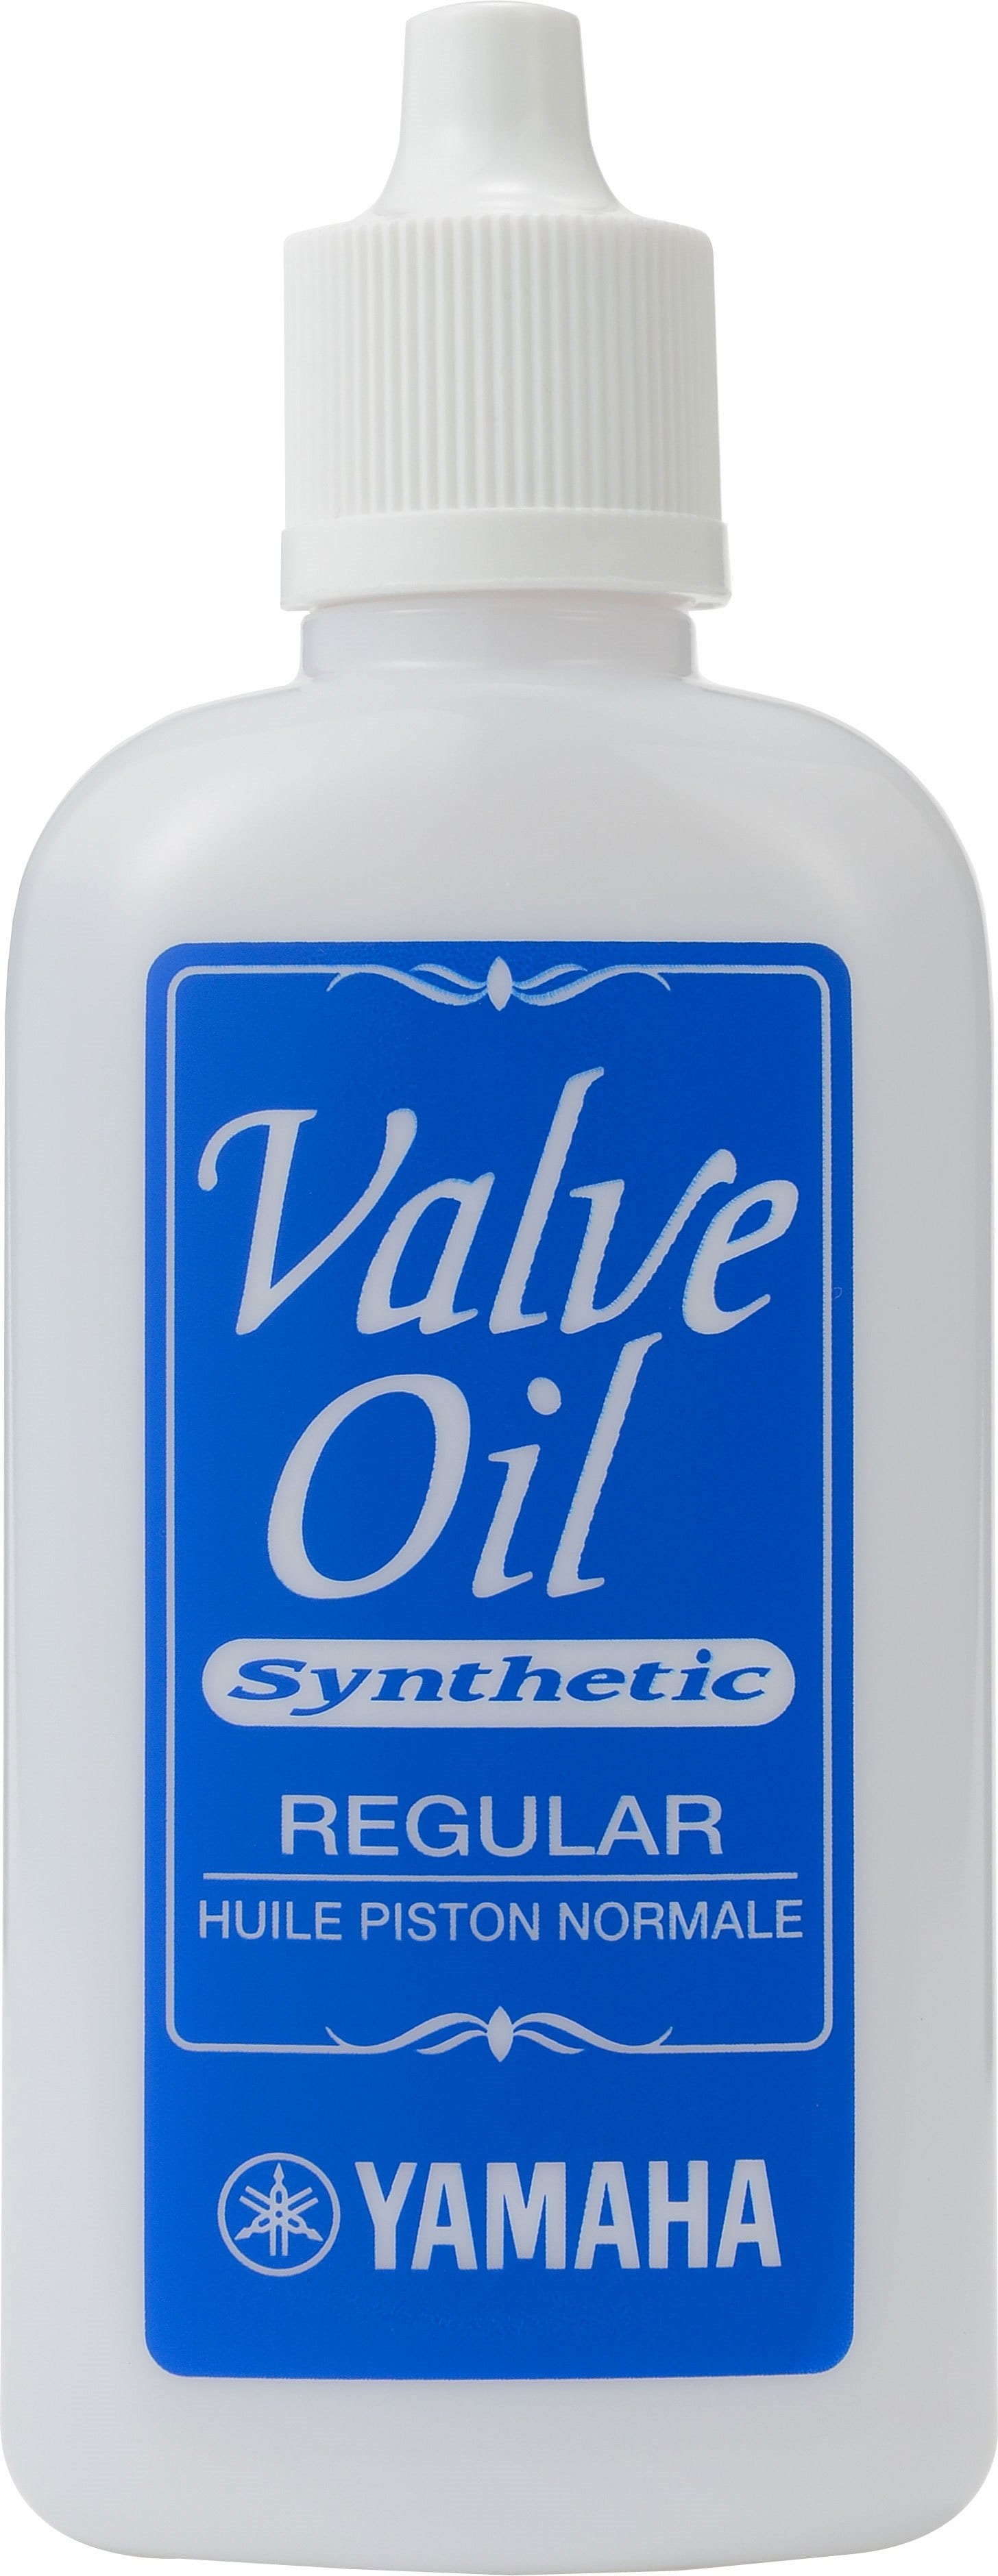 Yamaha Syntheitc Valve Oil